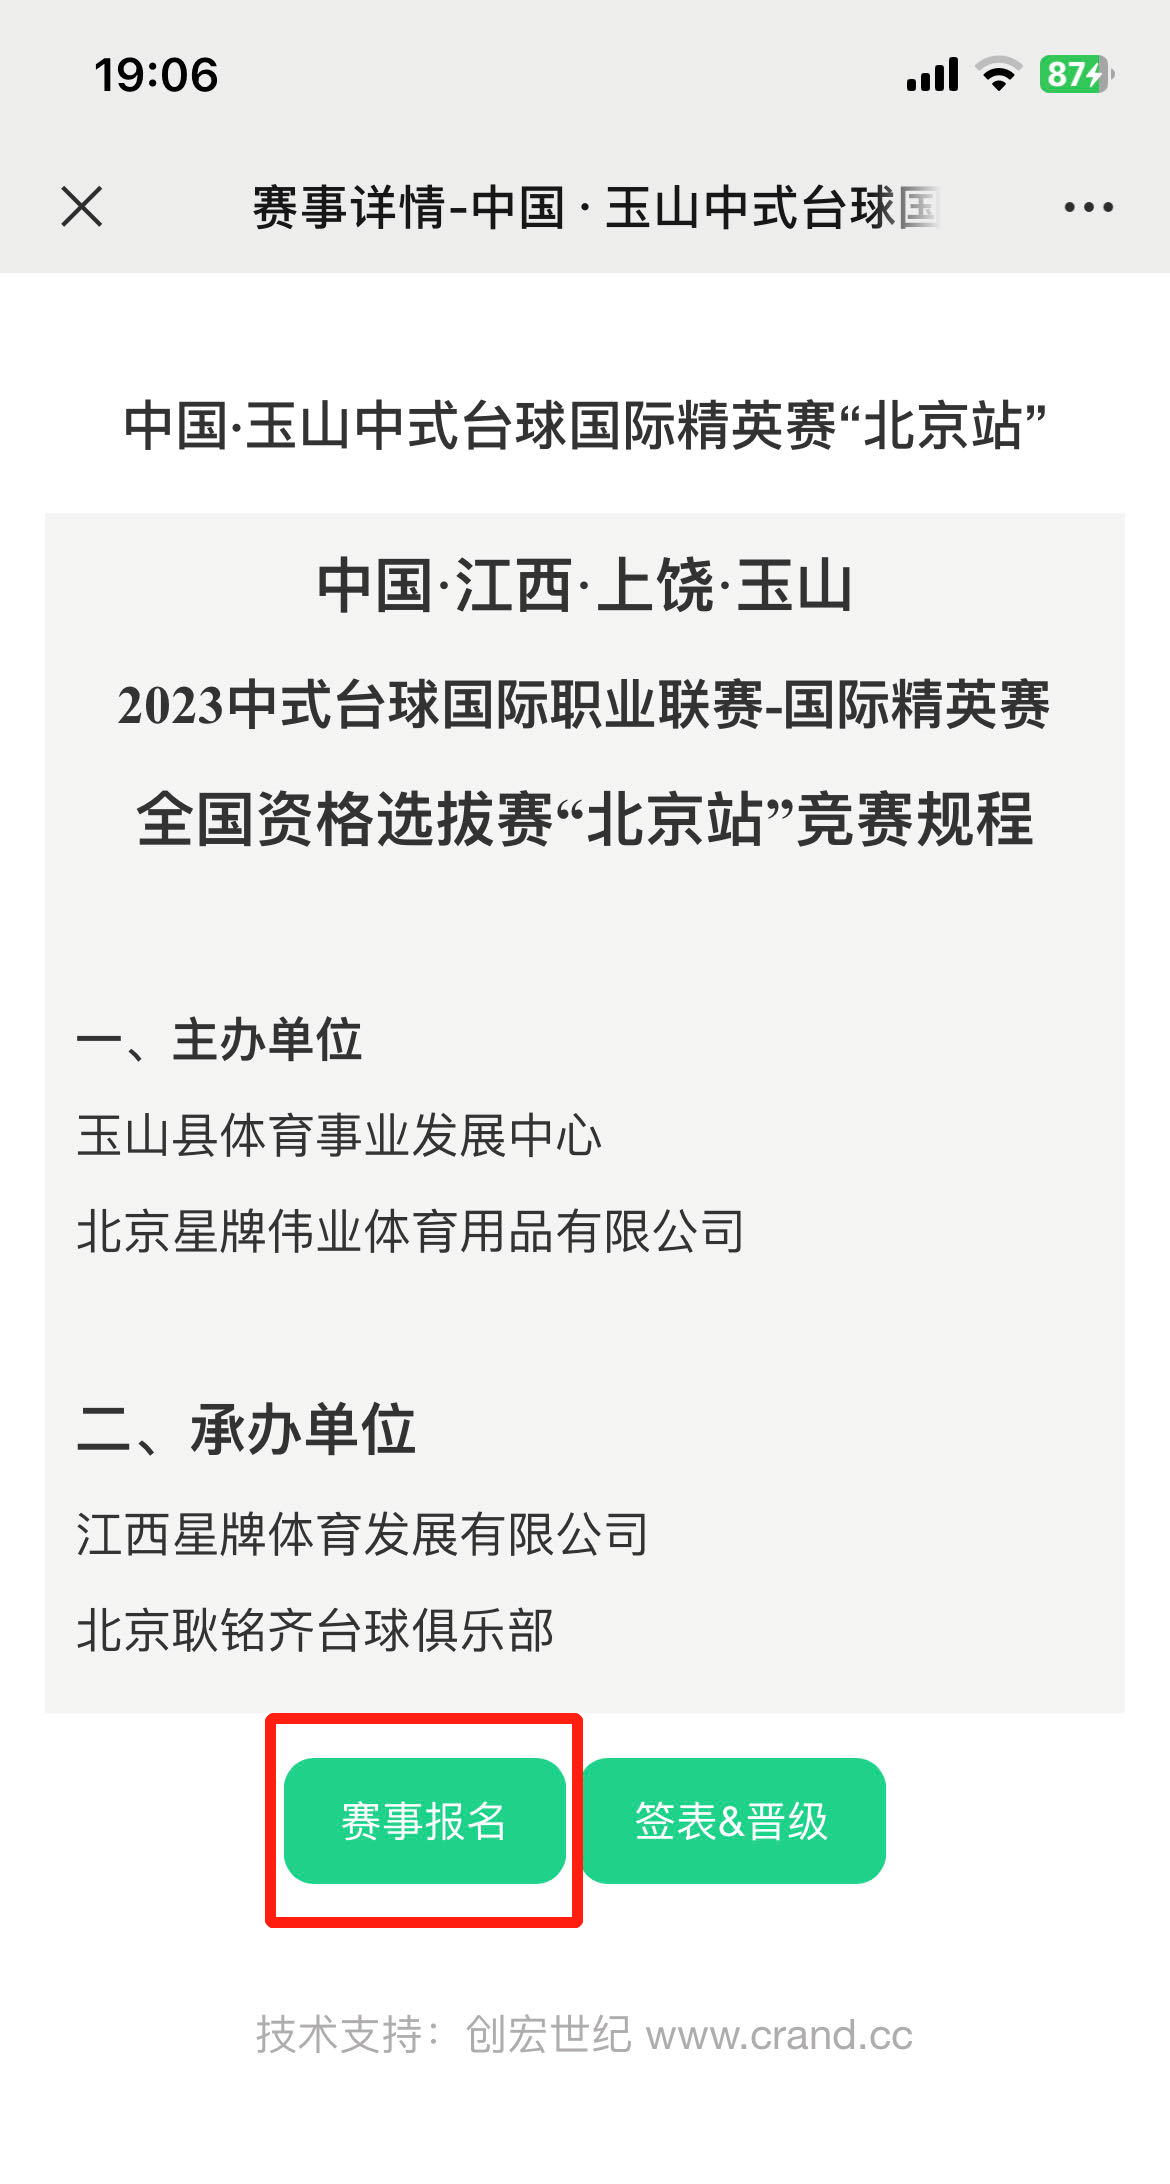 “中国·玉山2023中式台球国际精英赛 全国资格选拔赛”报名须知